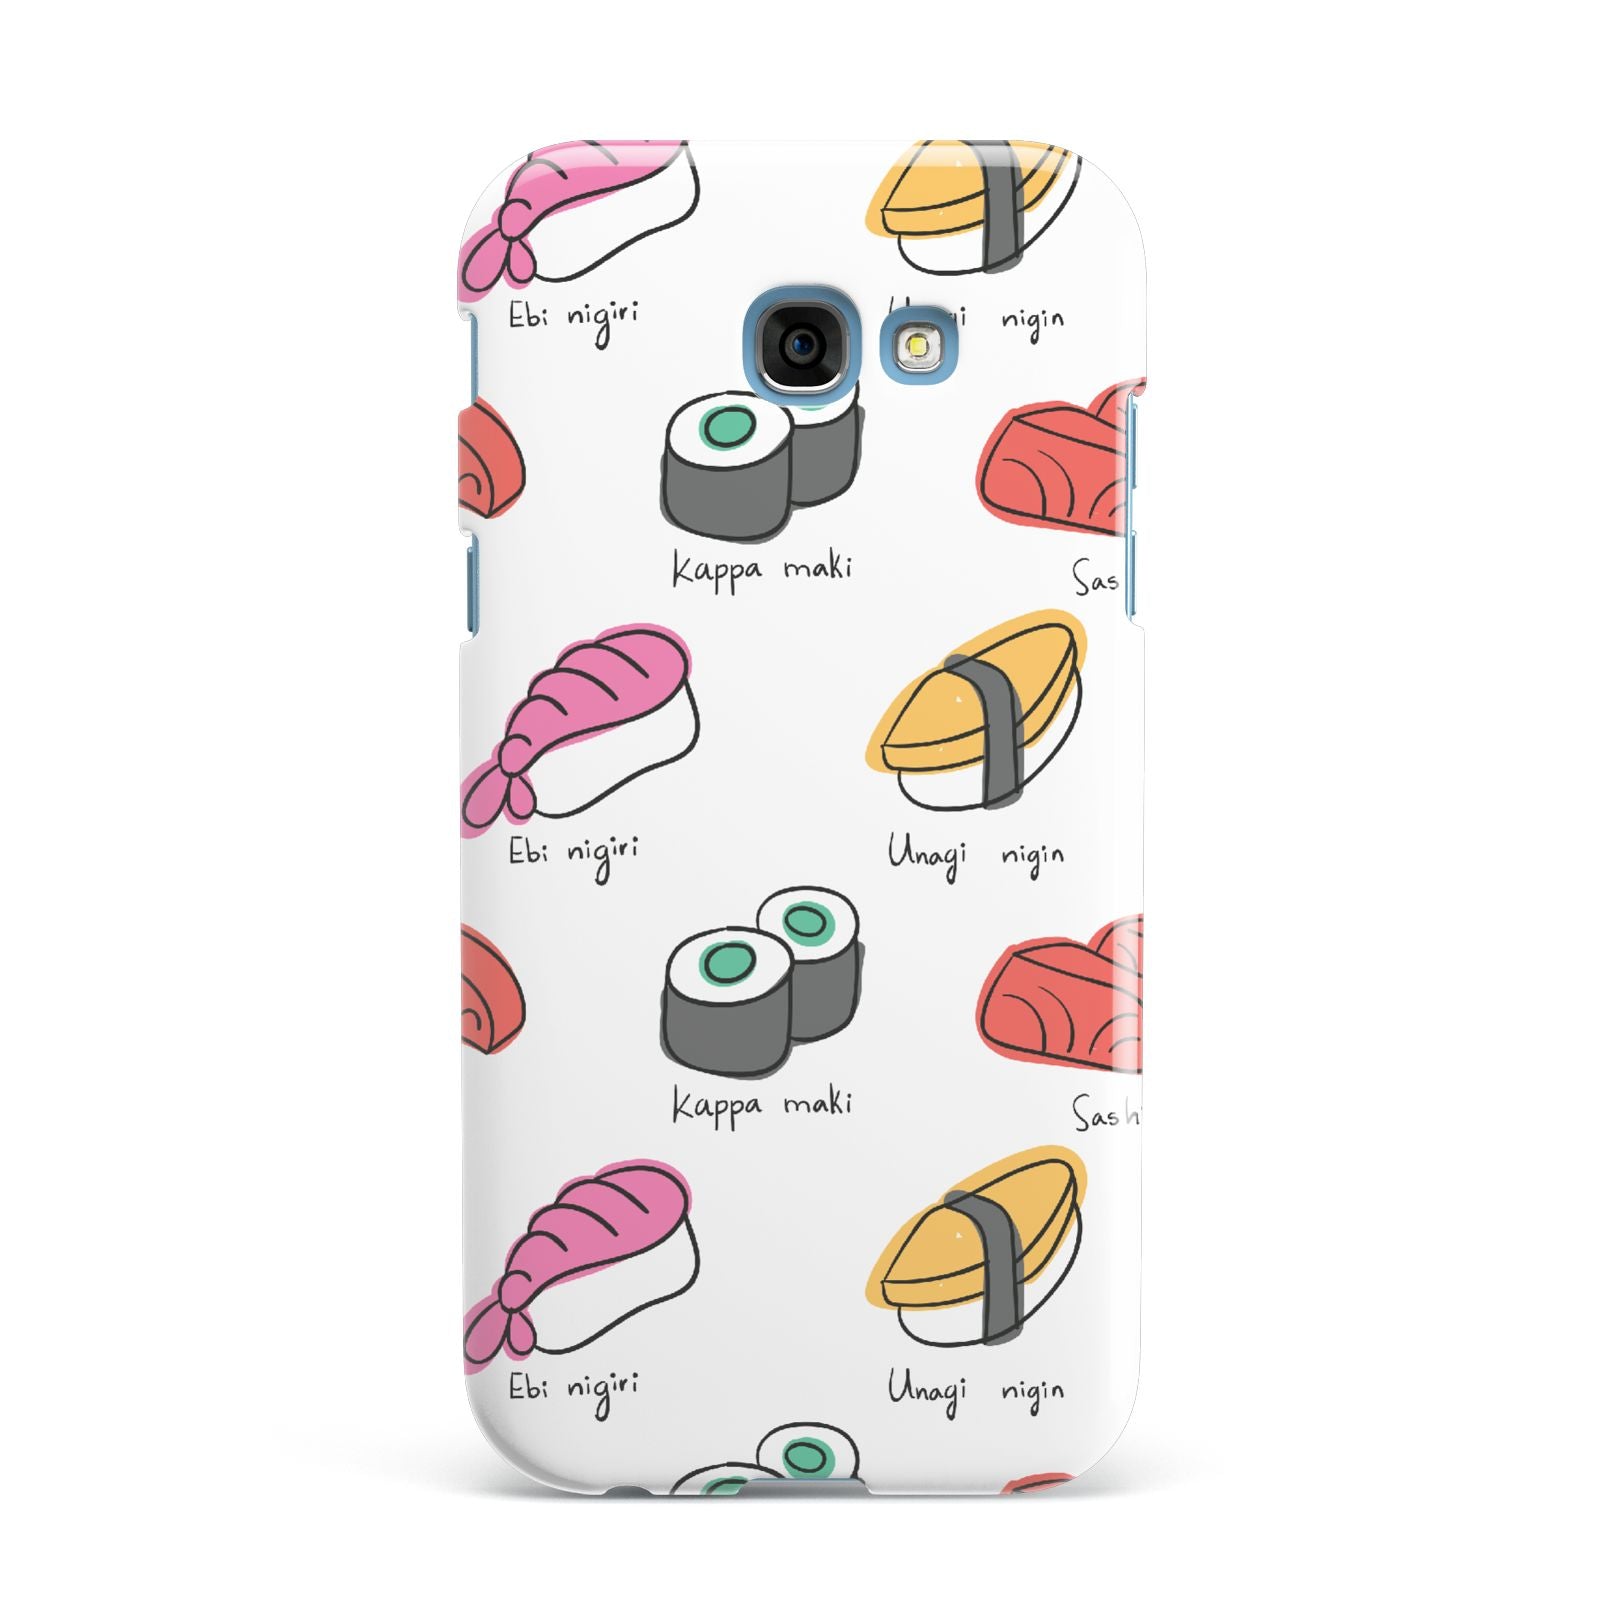 Sashimi Kappa Maki Sushi Samsung Galaxy A7 2017 Case